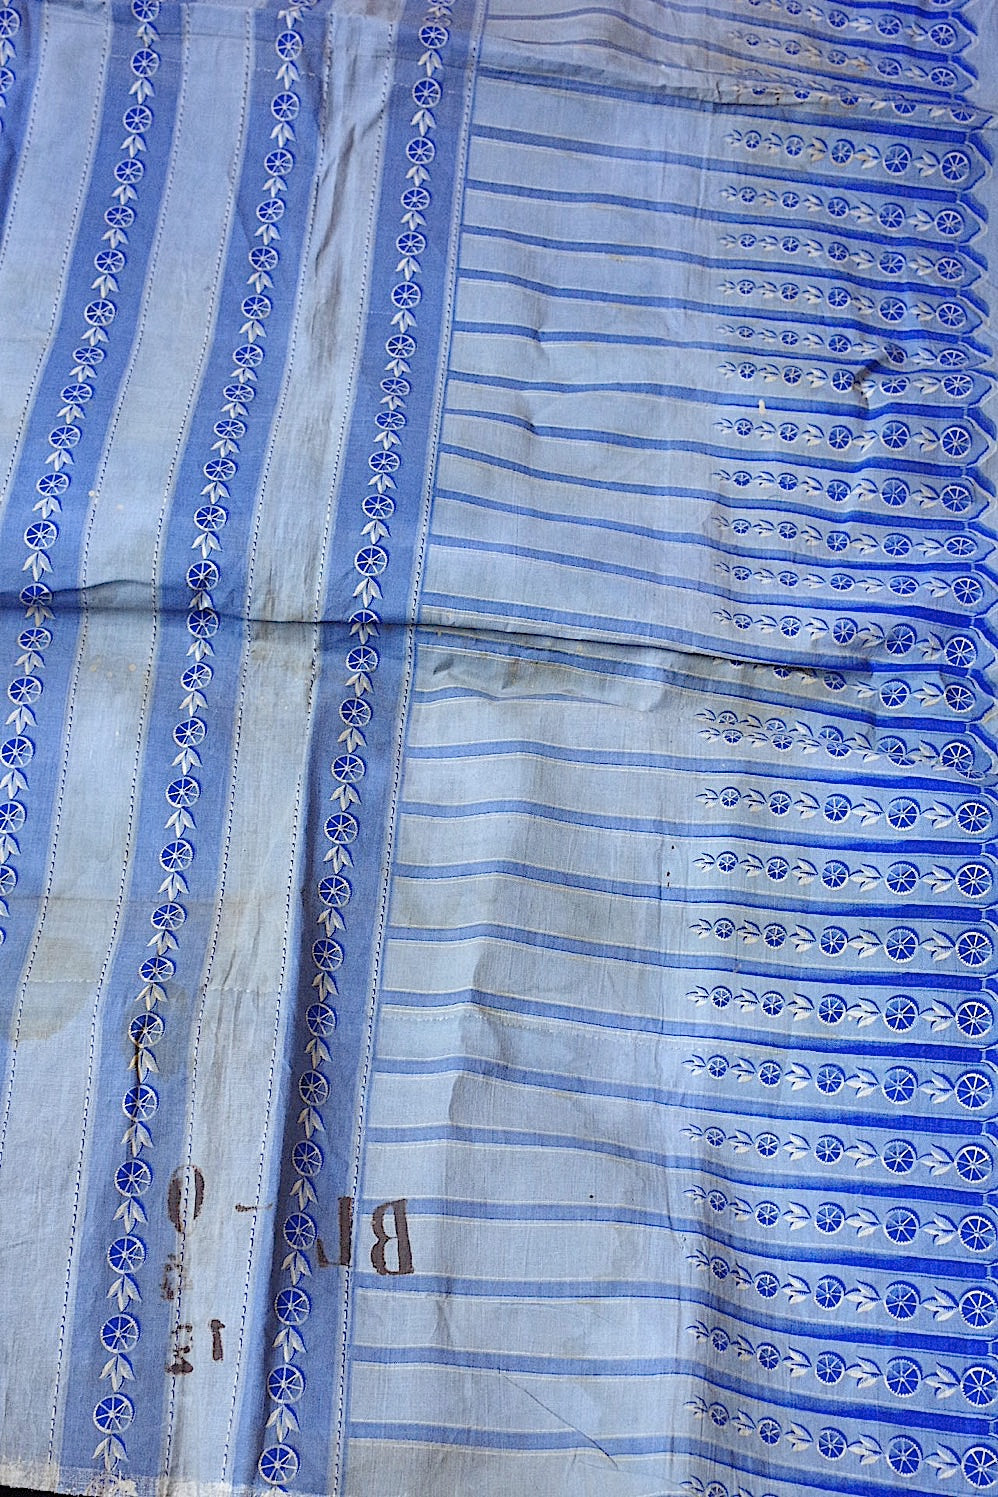 tissu antique antique fabric